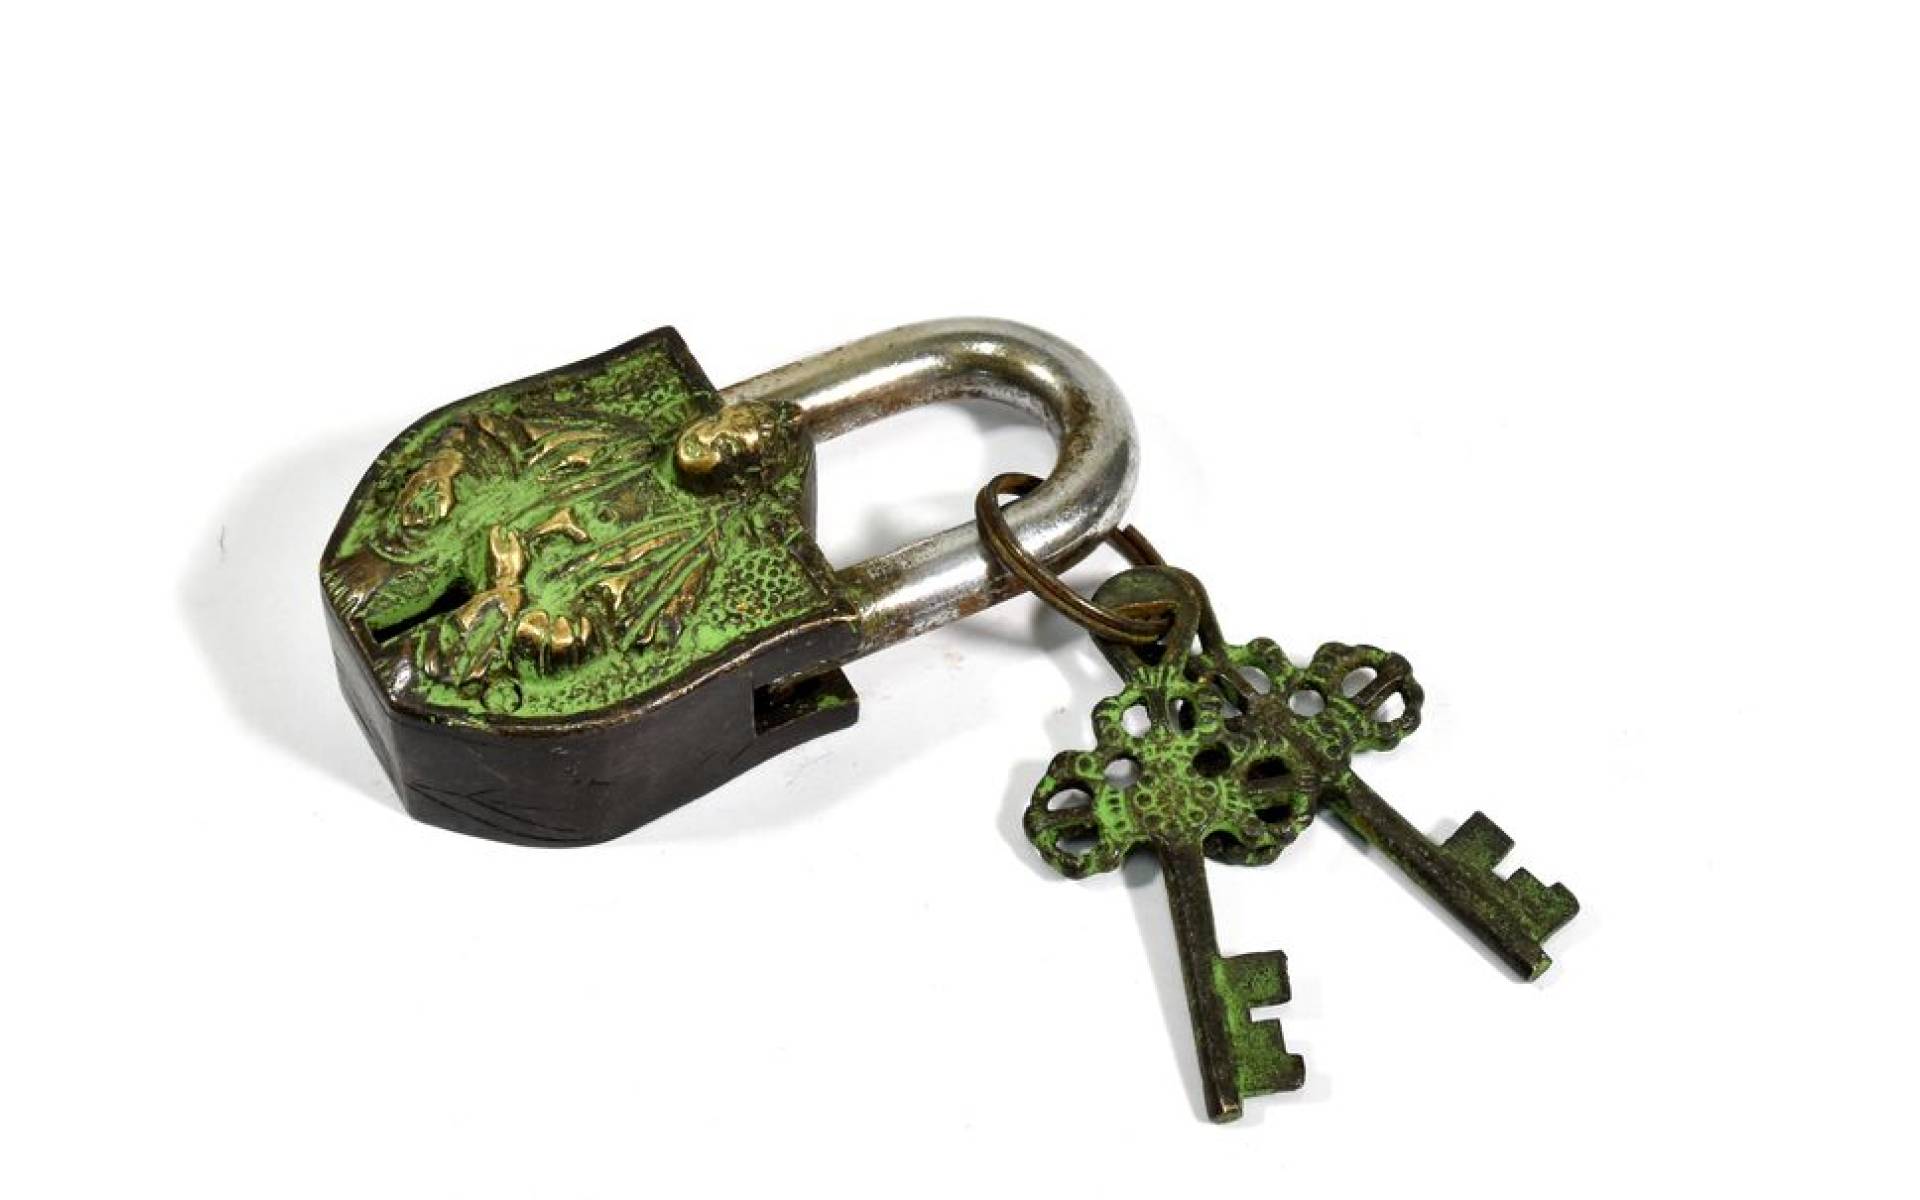 Visiaci zámok, Sai Baba, zelená patina, mosadz, dva kľúče v tvare dorje, 9cm